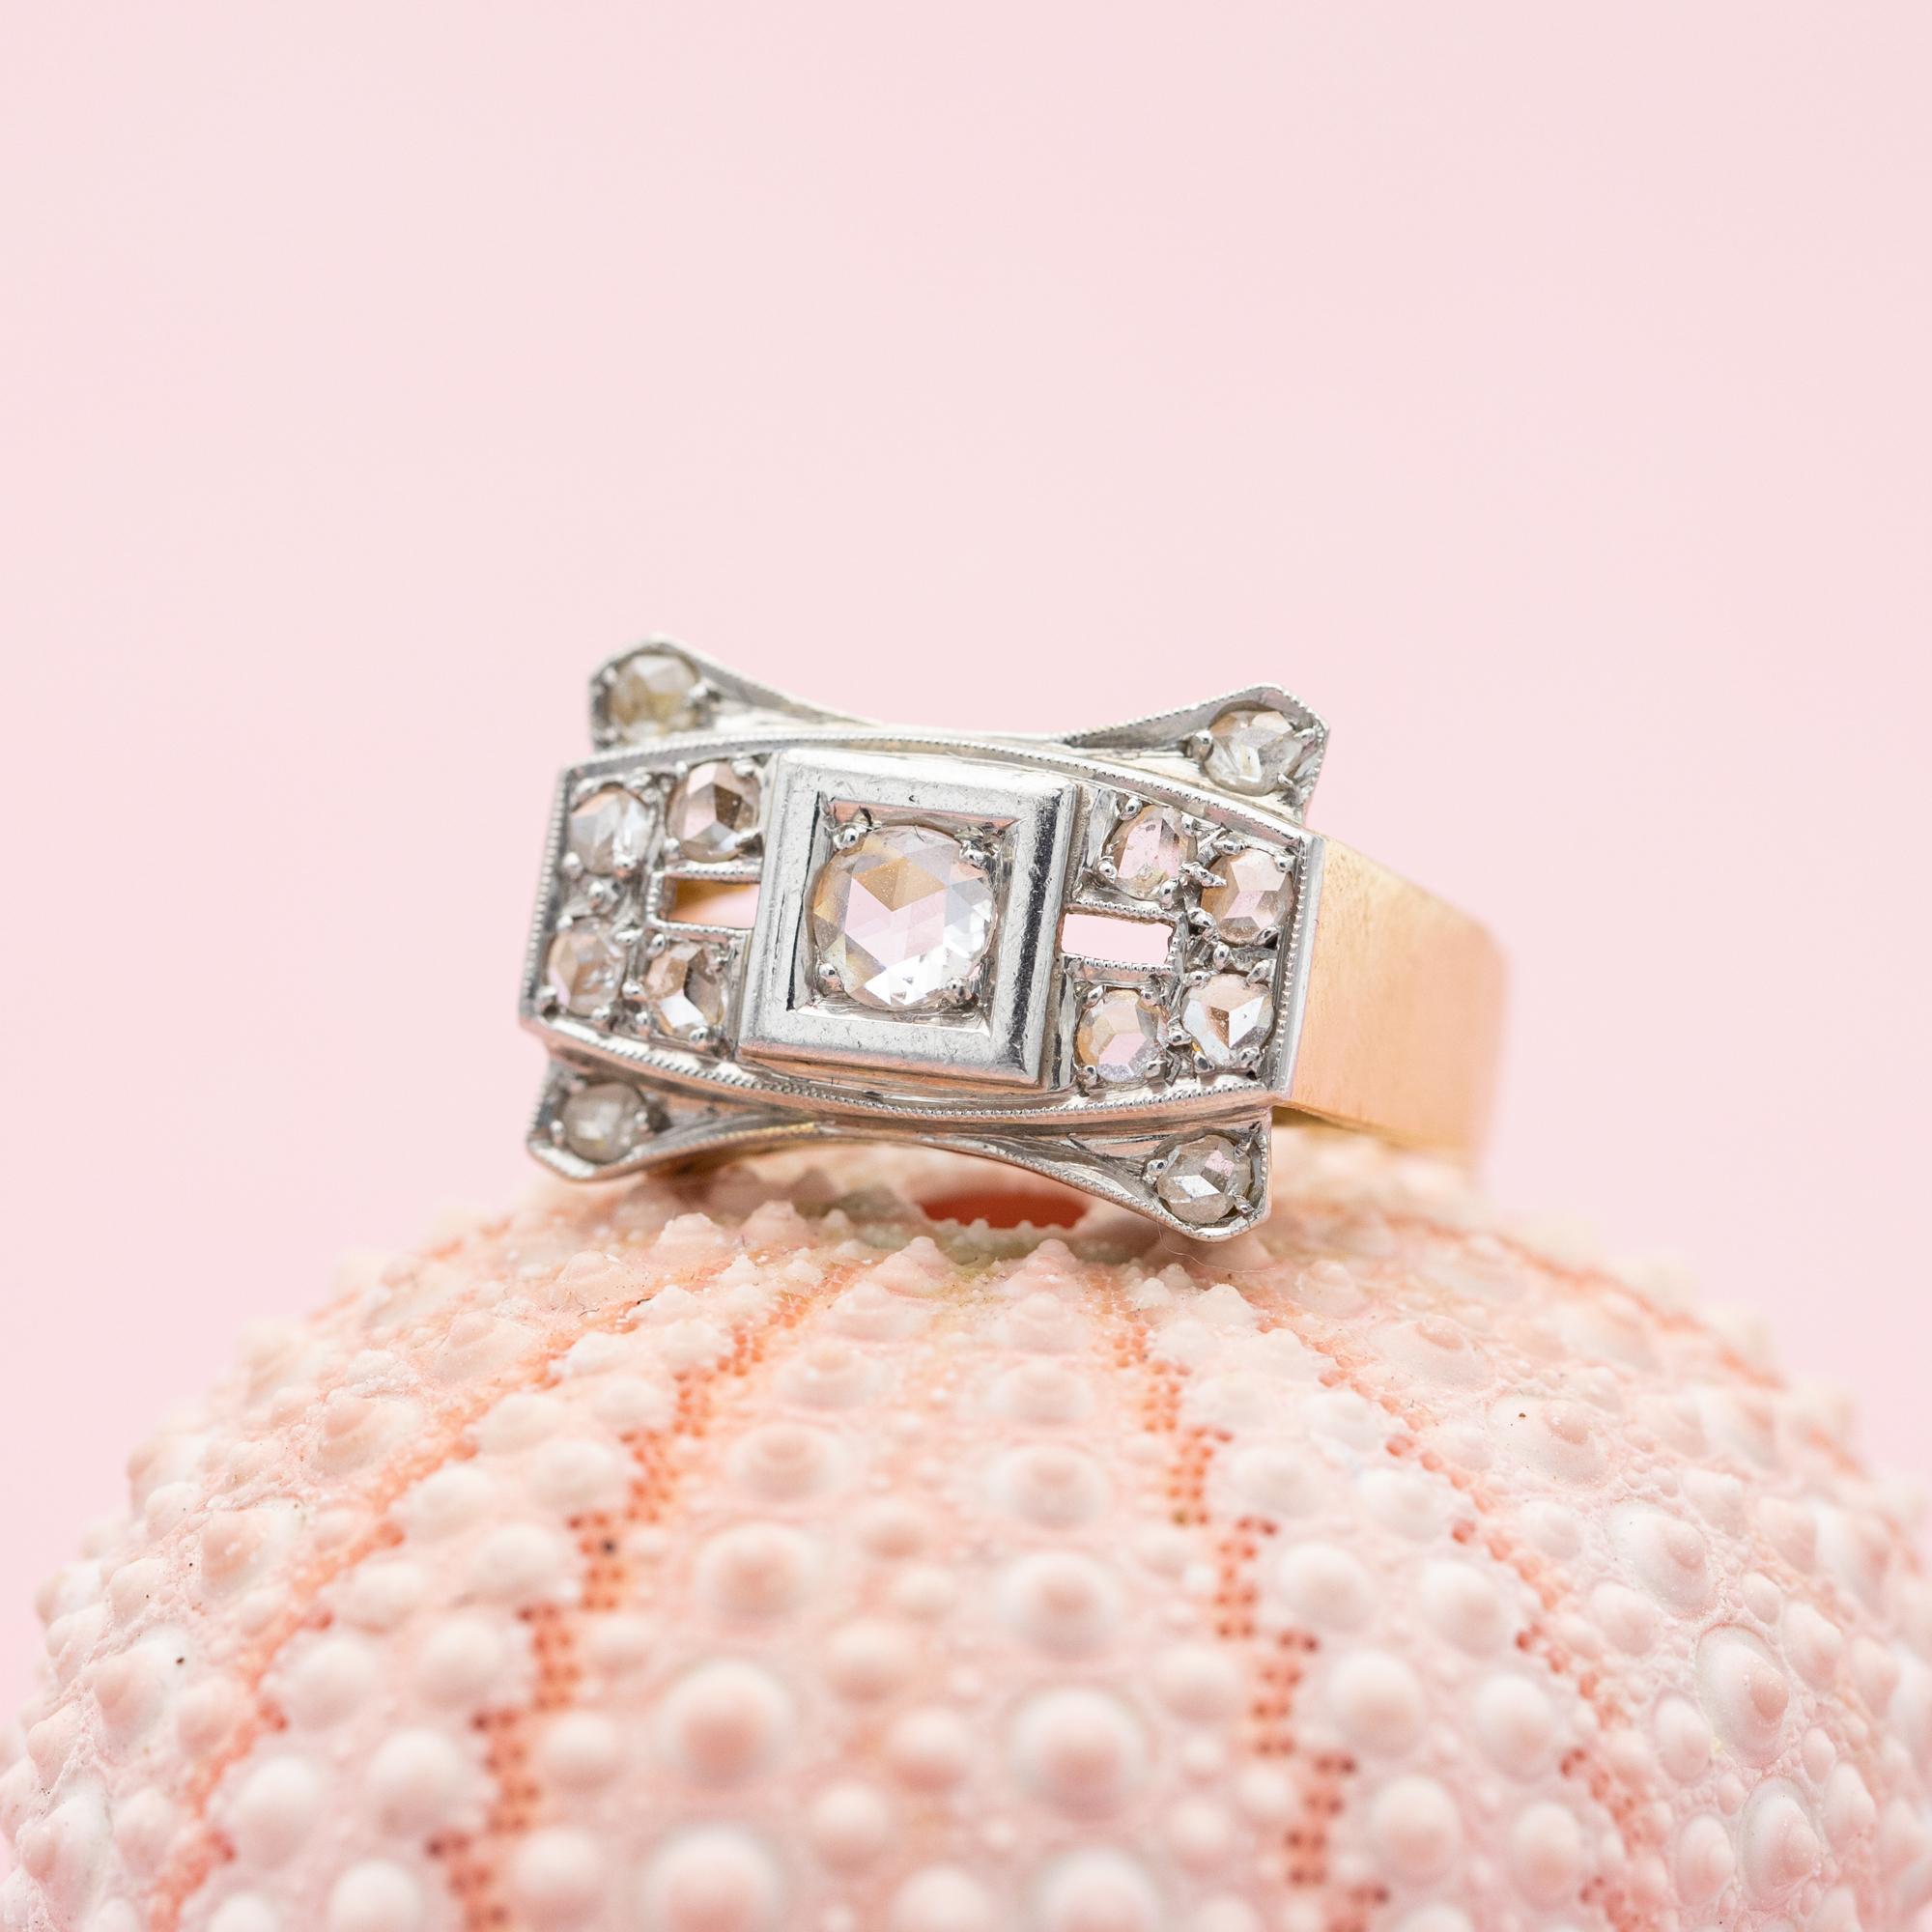 Nous vous proposons à la vente cette belle bague volumineuse en diamant taillé en rose. Cette bague Tank est fabriquée en or jaune 18 k et marquée d'un poinçon de 18 k. Ce type de bague est appelé 